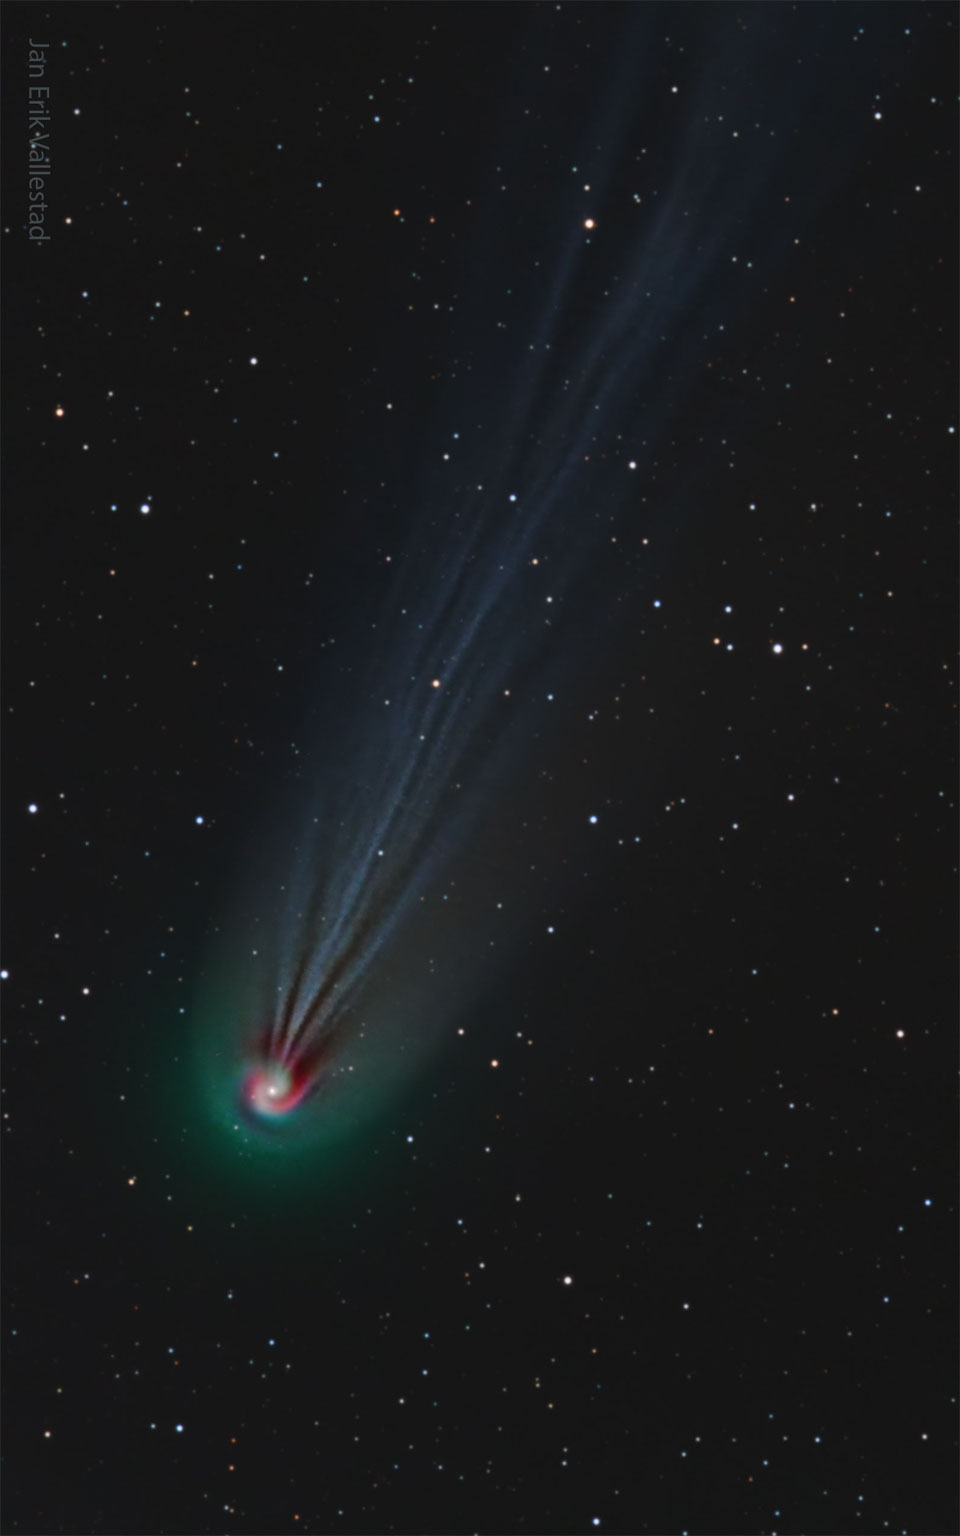 Rechts unten sind der Kern und die Koma des Kometen Pons-Brooks zu sehen. Die Koma leuchtet grünlich, der Kern ist von spiralförmigen Ausgasungen umgeben, ein Hinweis, dass er sich vermutlich dreht. Nach rechts oben verlaufen die Schweife in Strähnen. Im Hintergrund sind lose Sterne verteilt.